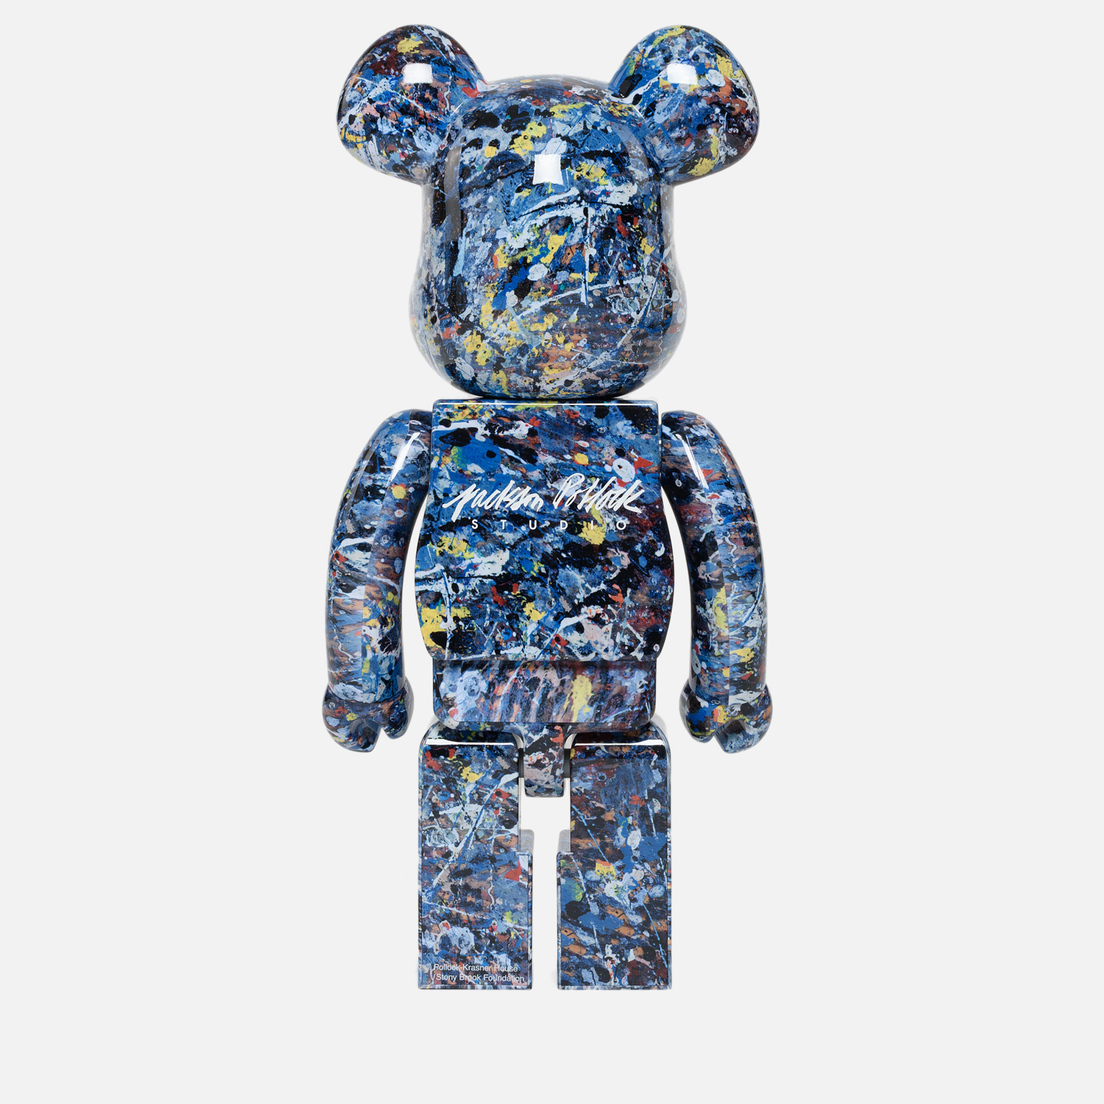 Medicom Toy Игрушка Jackson Pollock Studio 1000%